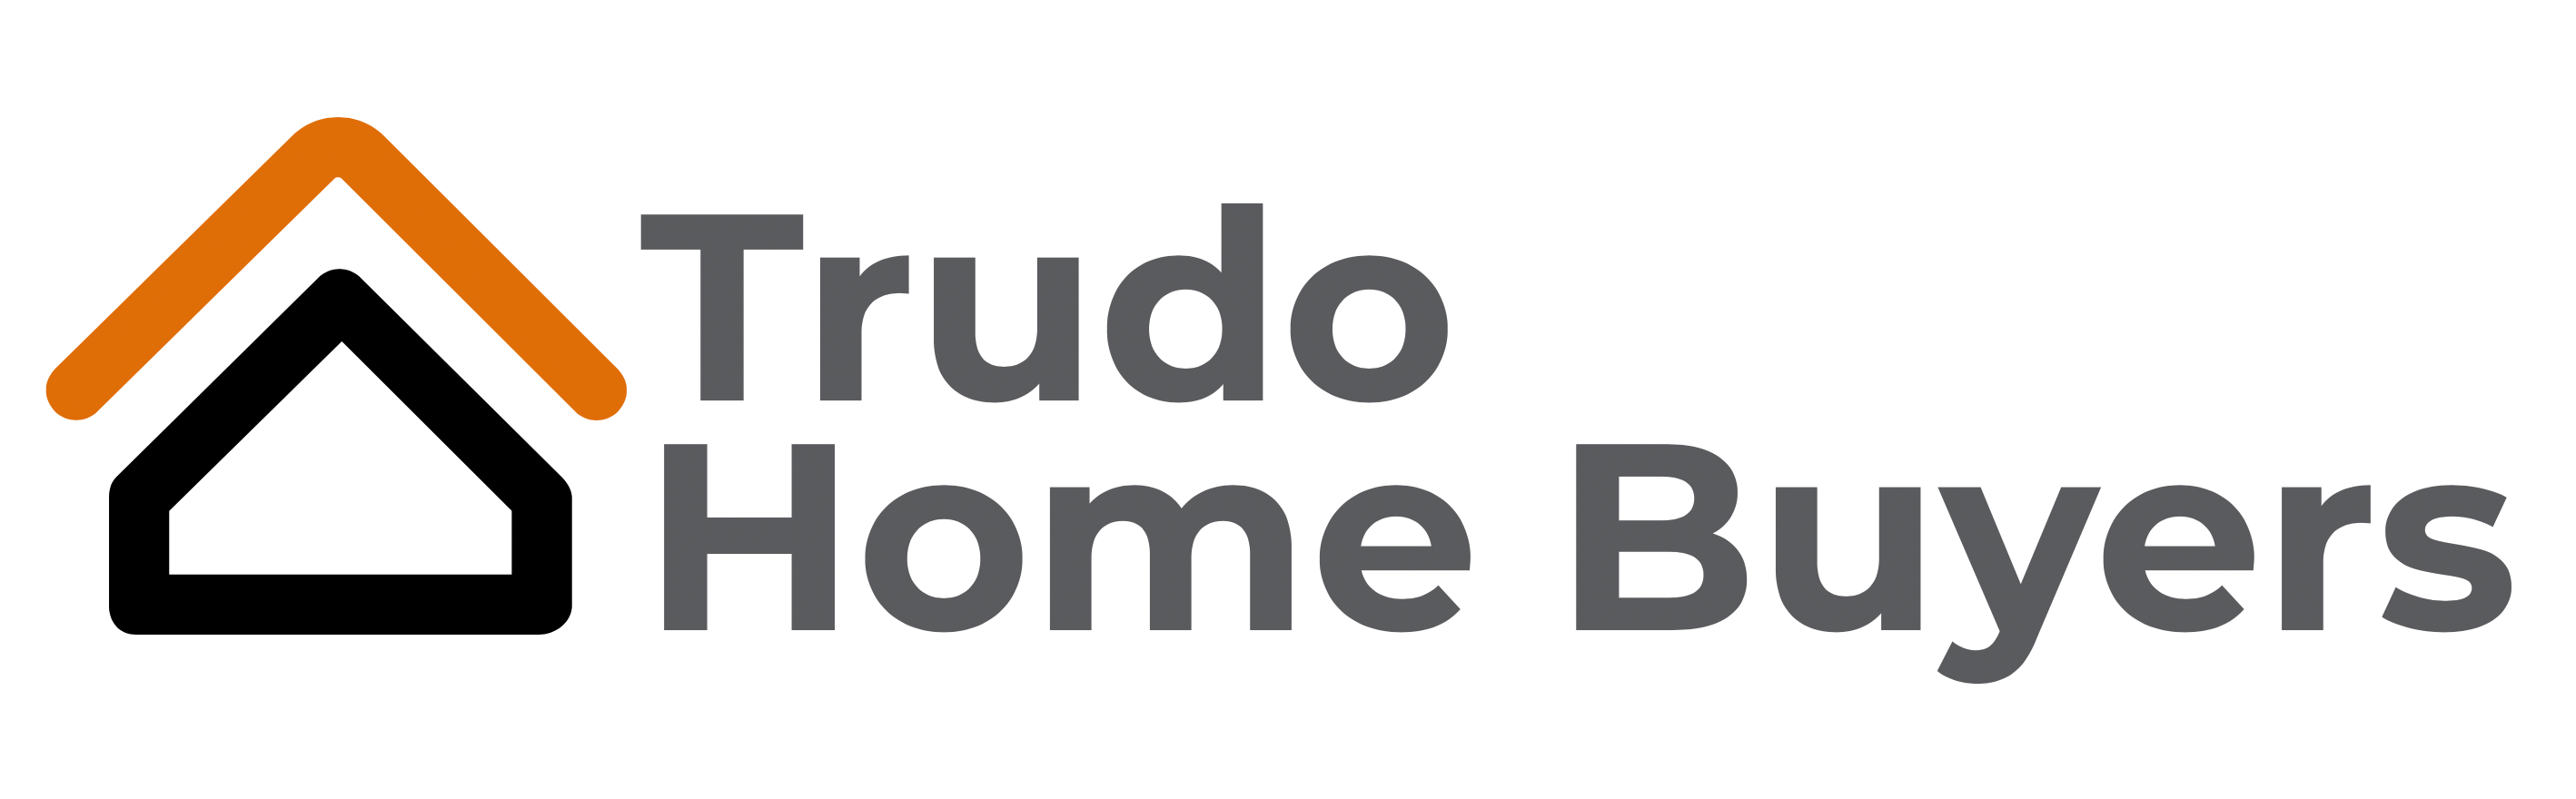 Trudo Home Buyers logo